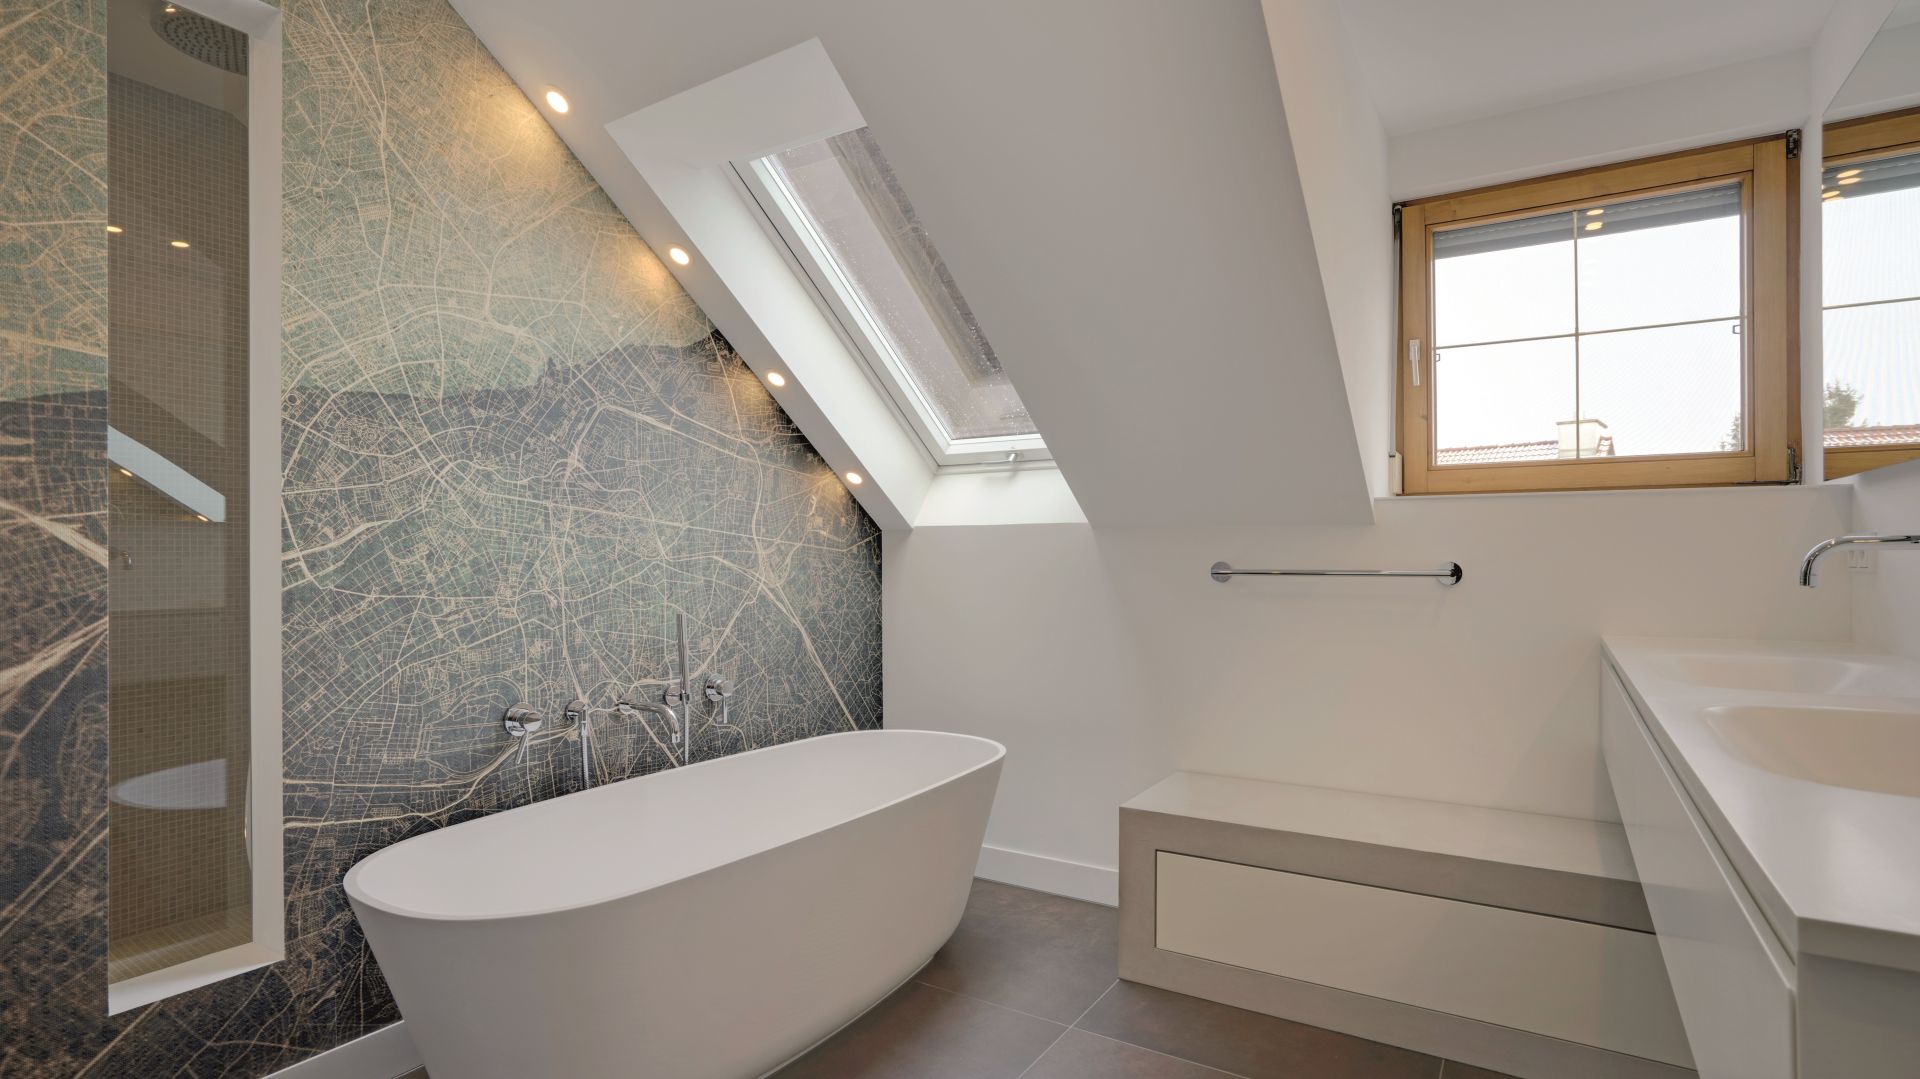 Prywatna łazienka jak domowe SPA: gotowy projekt salonu kąpielowego